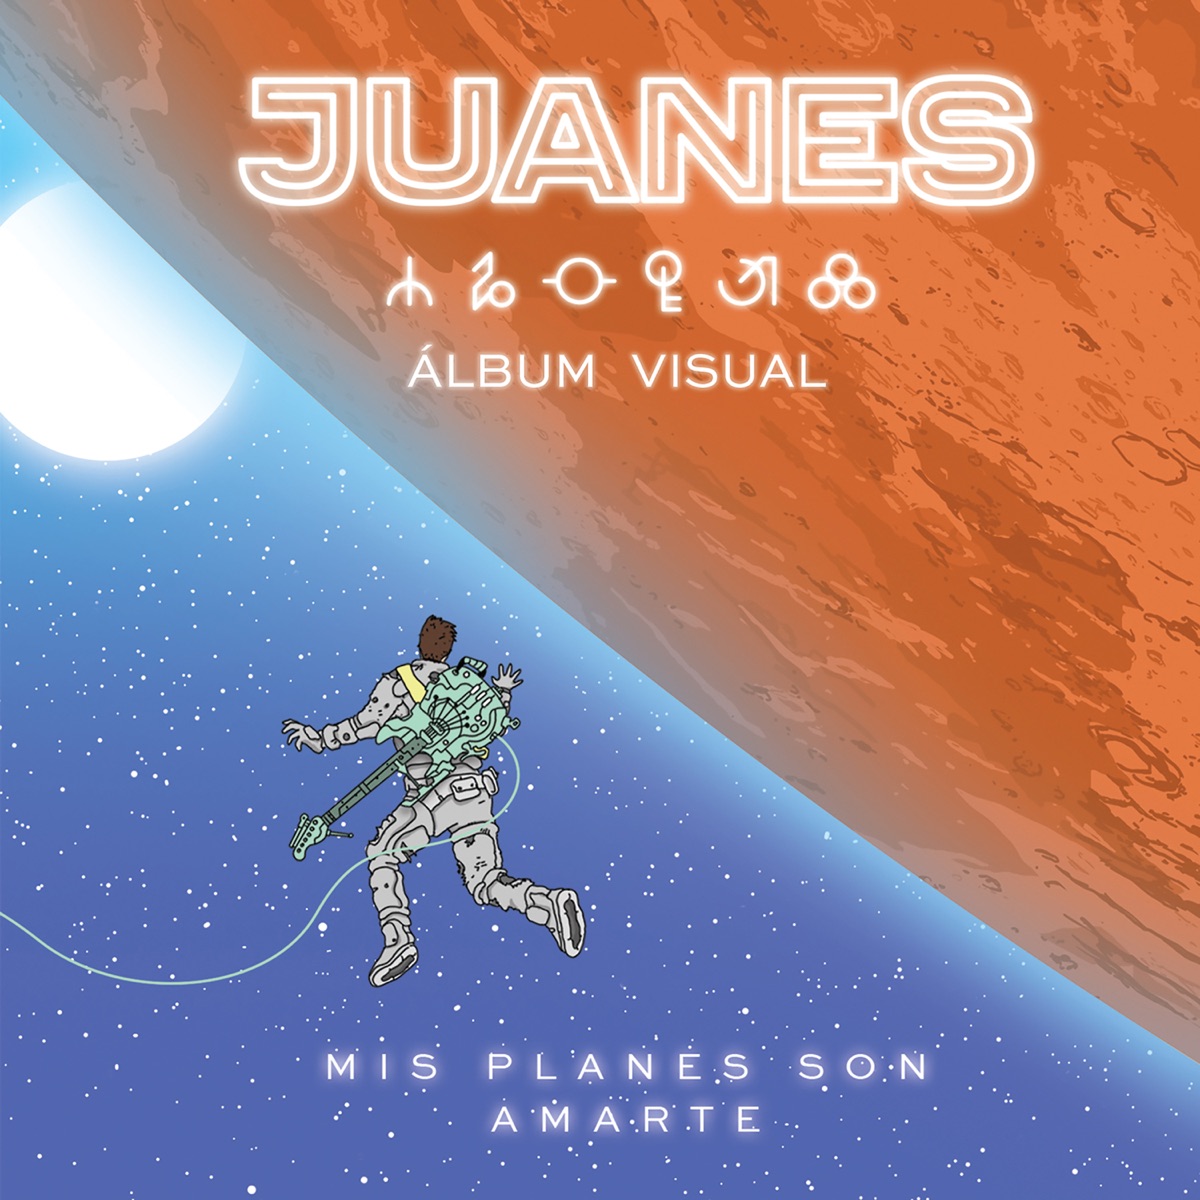 Juanes - Loco de Amor (Deluxe Edition)2014 1200x1200bb